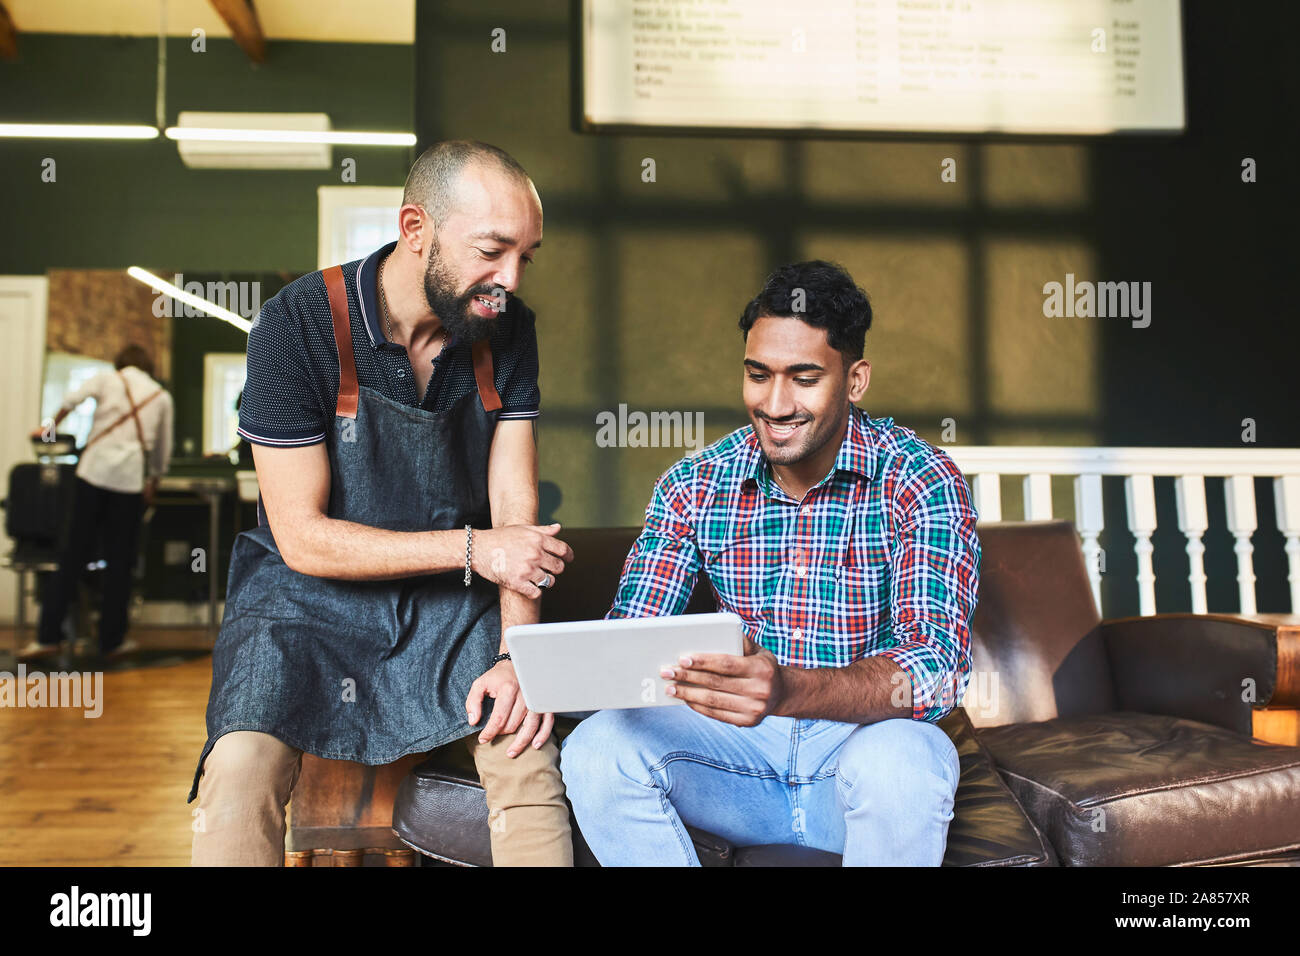 Salon de coiffure masculin et le client using digital tablet in barbershop Banque D'Images